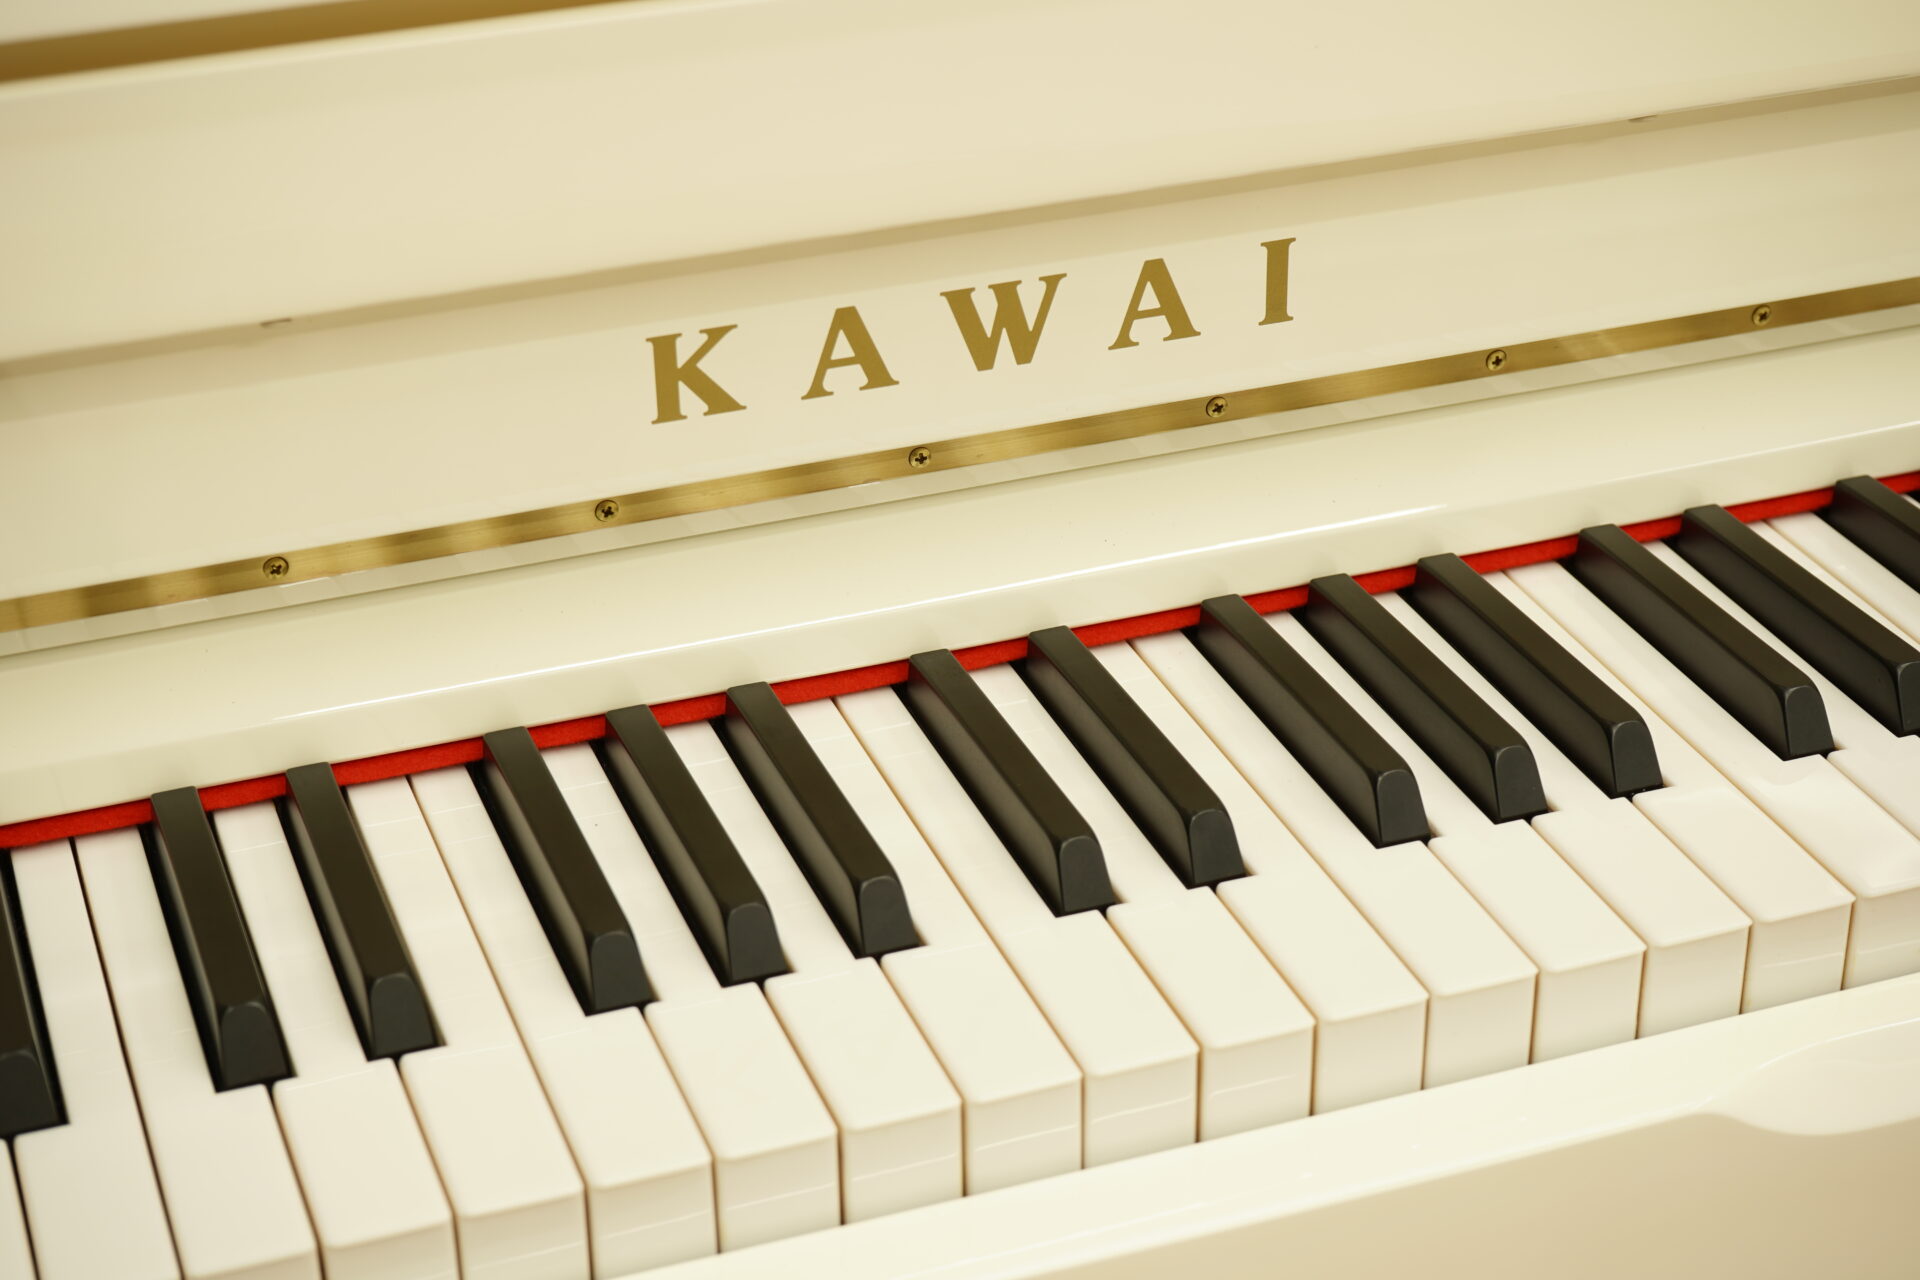 超価格、カワイk-2 人気のコンパクトピアノ、安心スローダウン鍵盤蓋♪